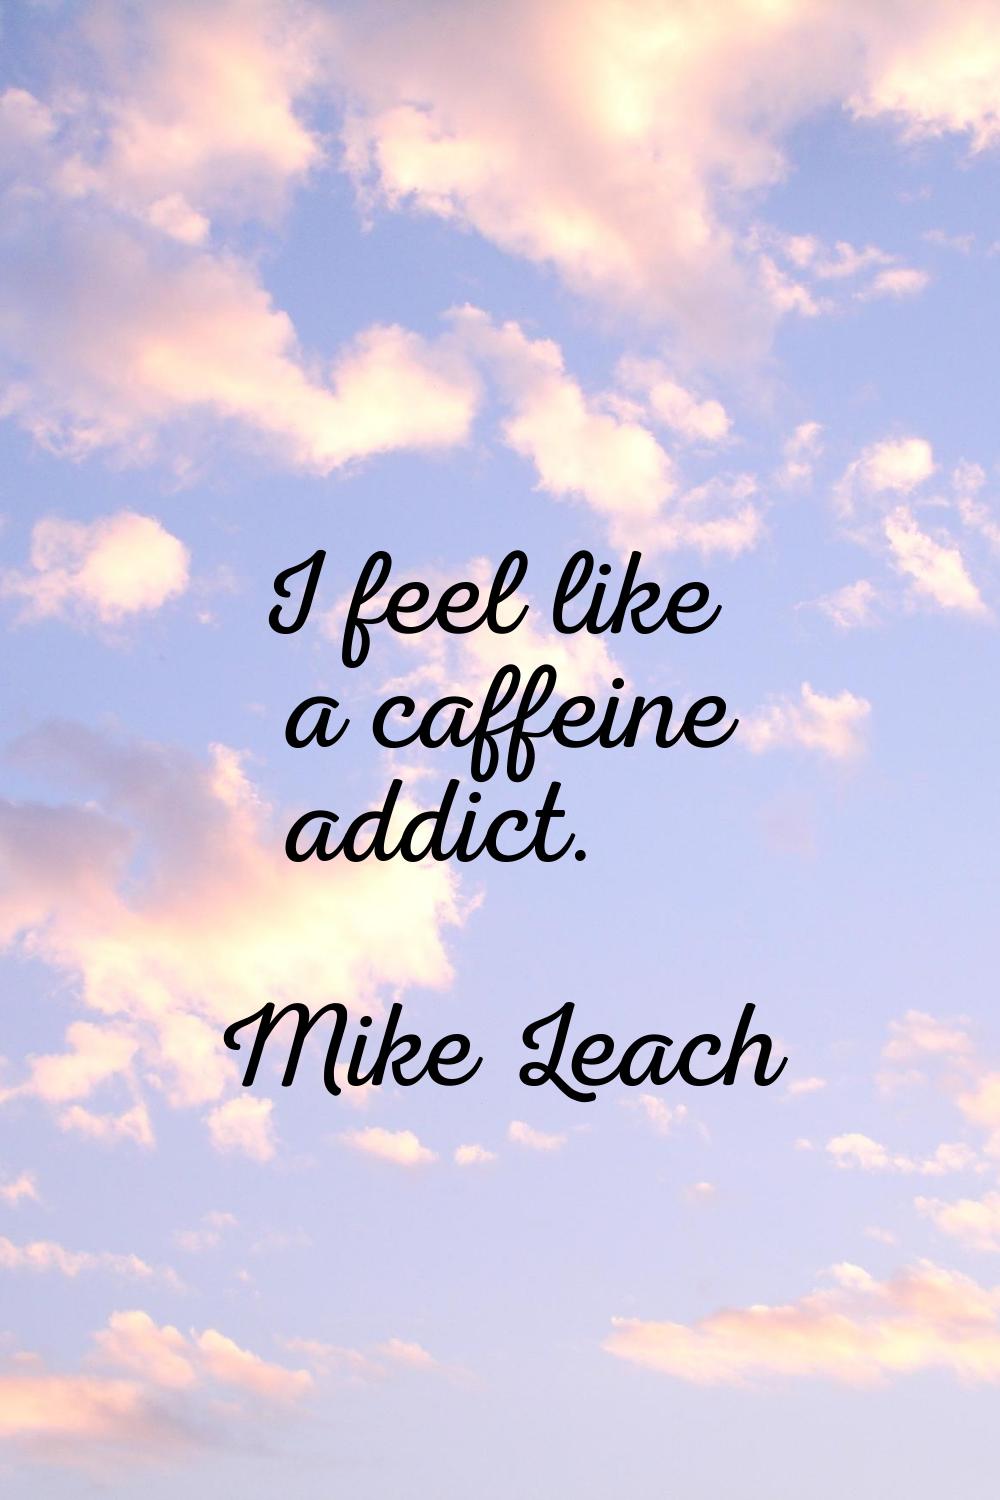 I feel like a caffeine addict.